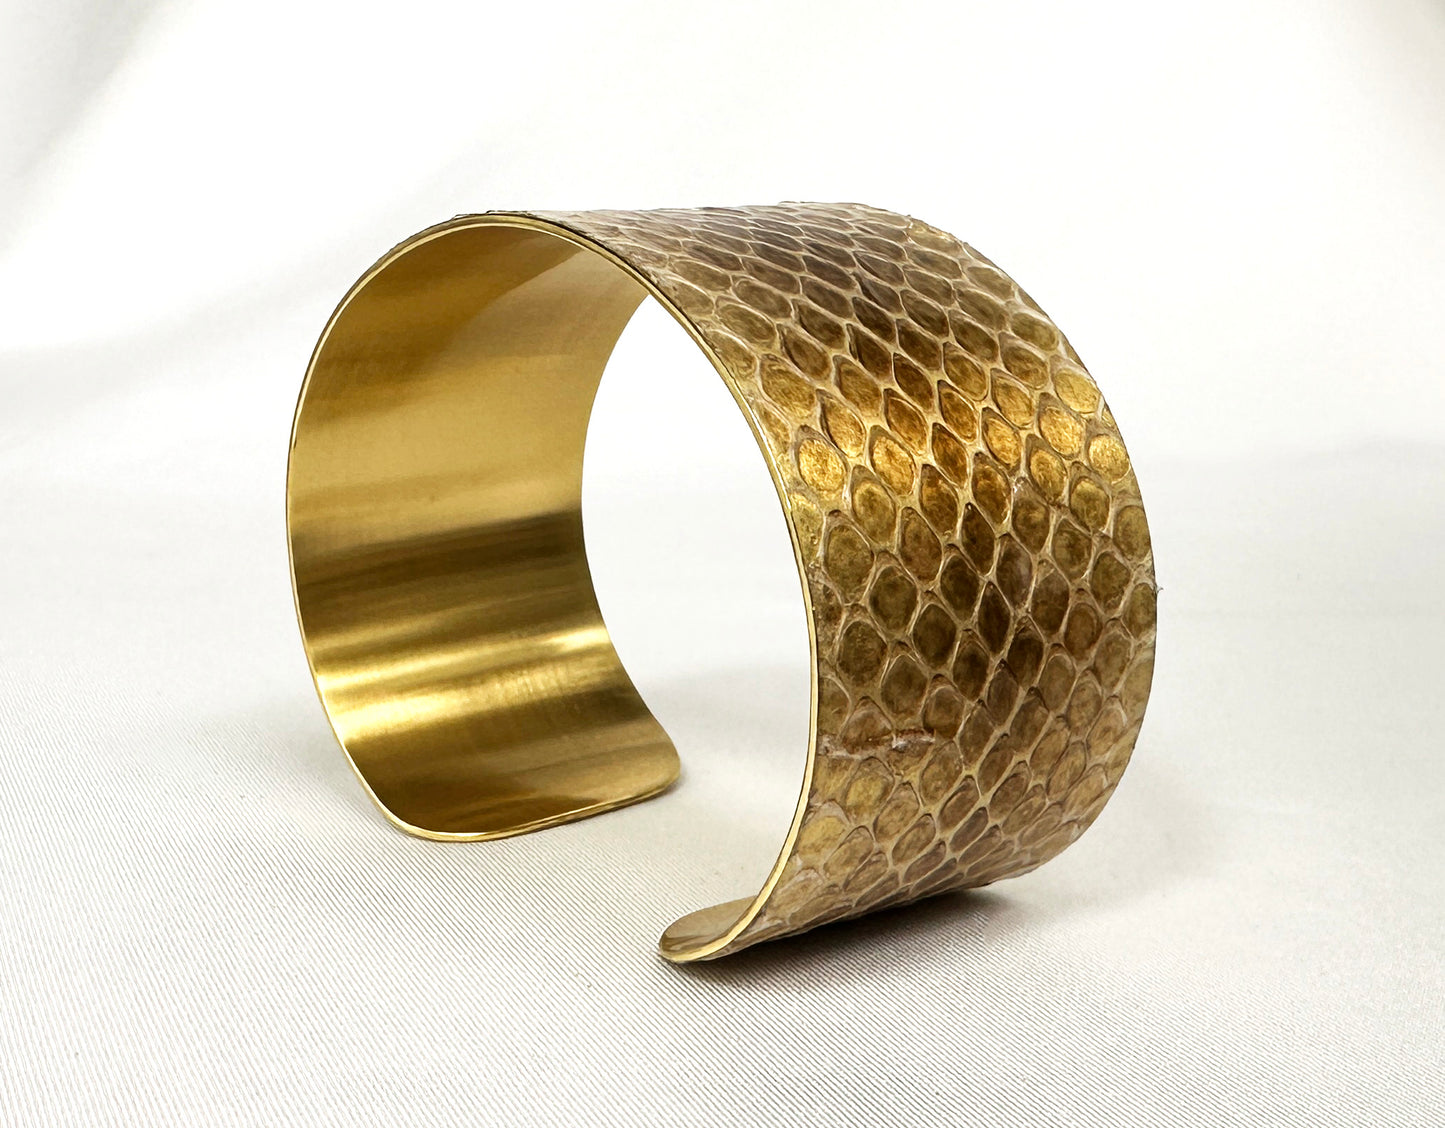 1.25" Brass Snake Shed Cuff Bracelet (Baron's Racer)